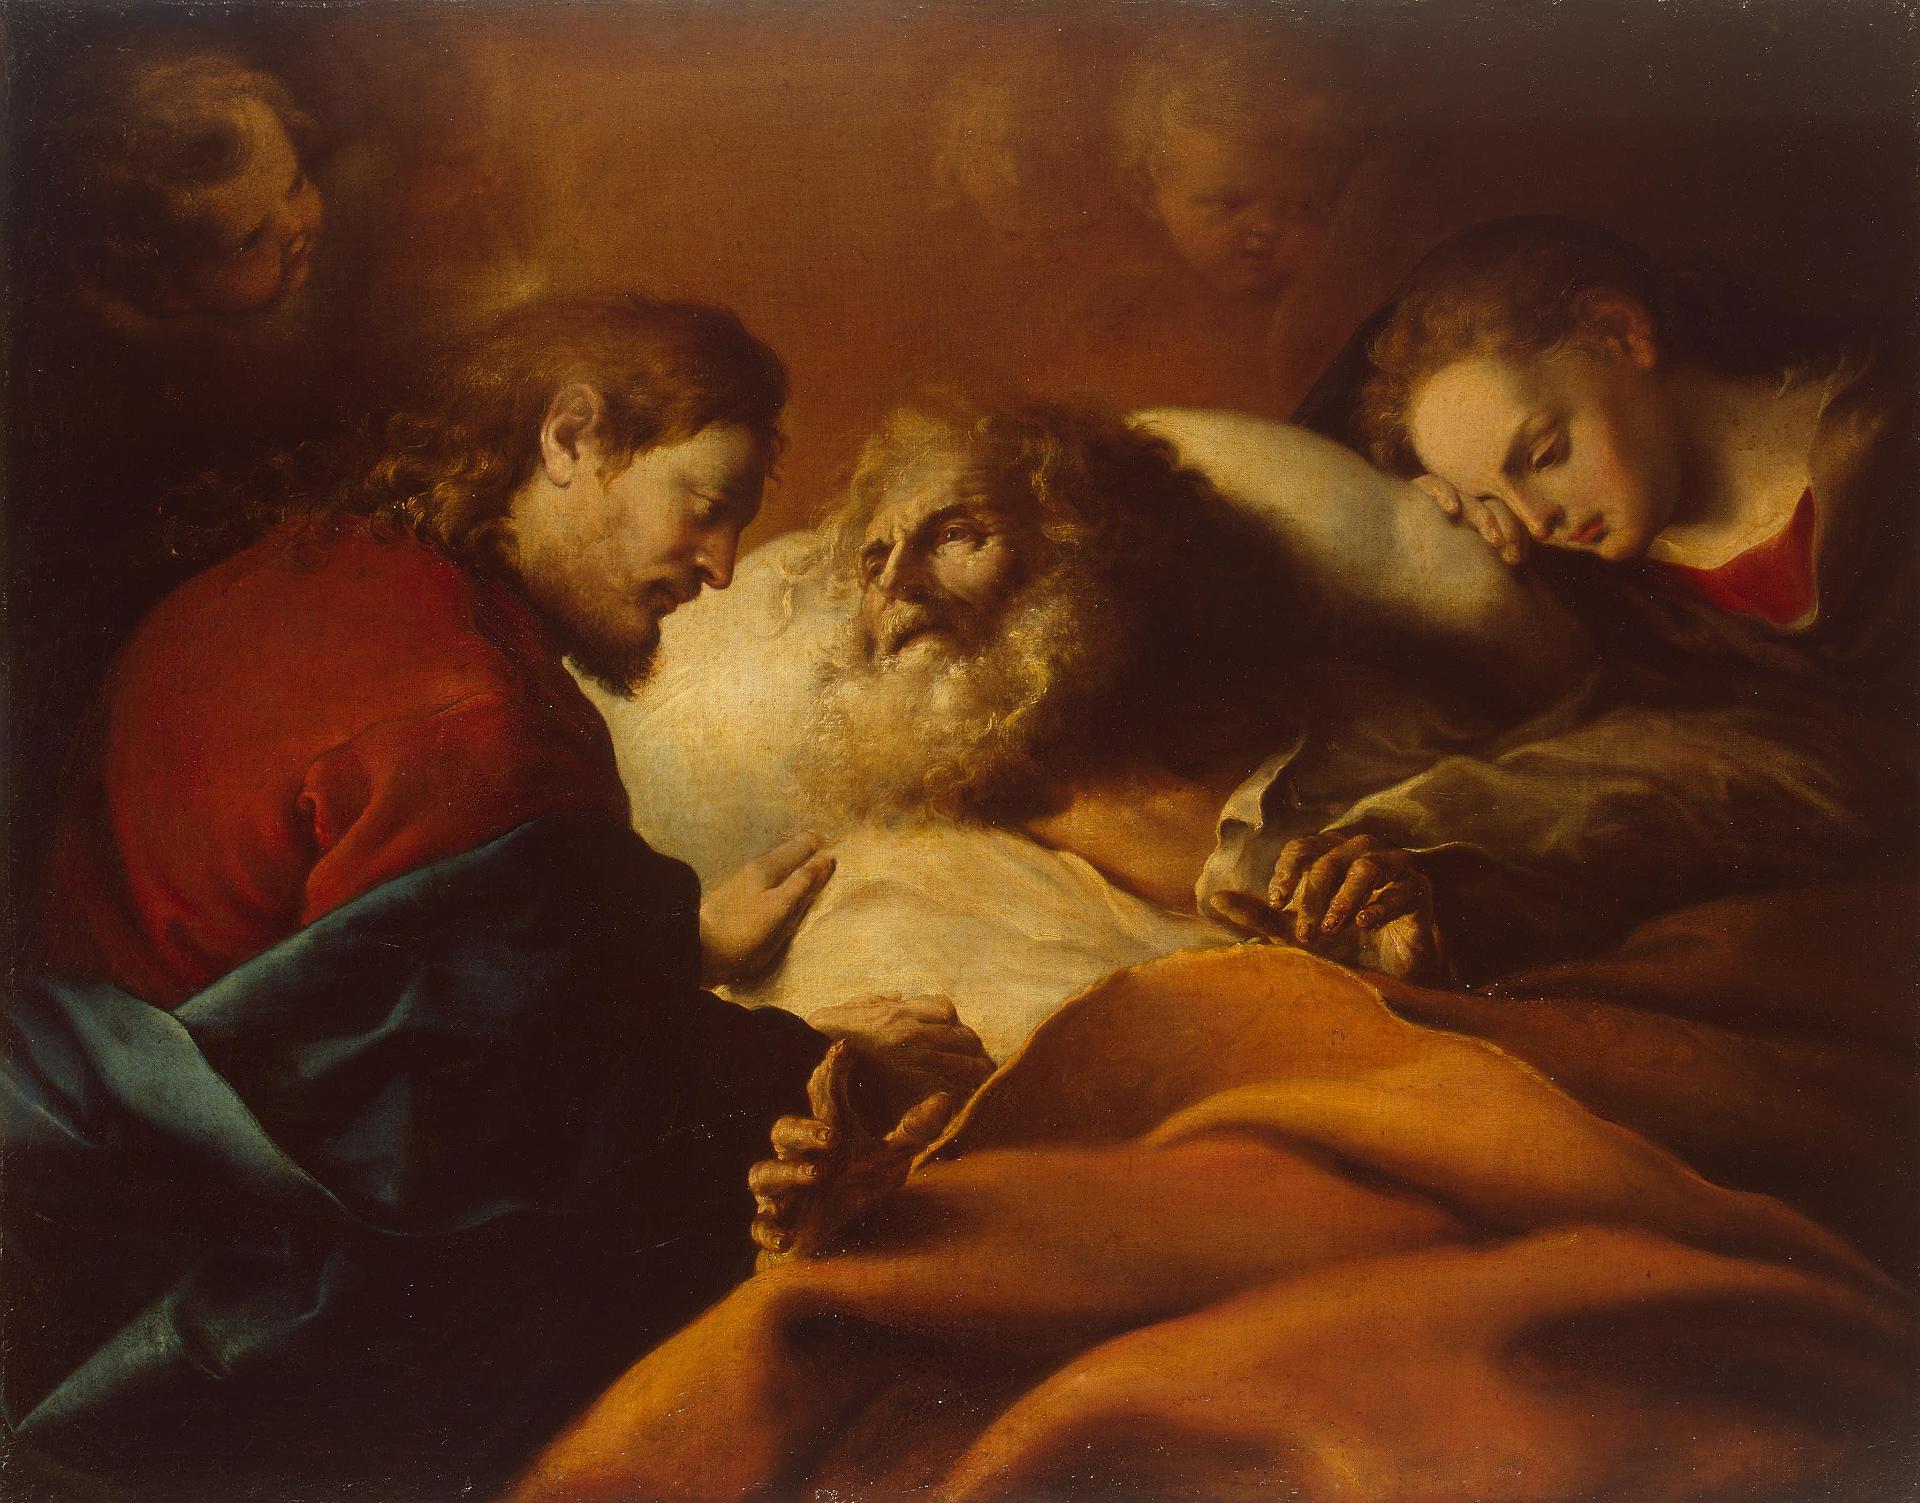 Алонсо Кано. "Смерть святого Иосифа". Между 1646-1652. Эрмитаж, Санкт-Петербург.